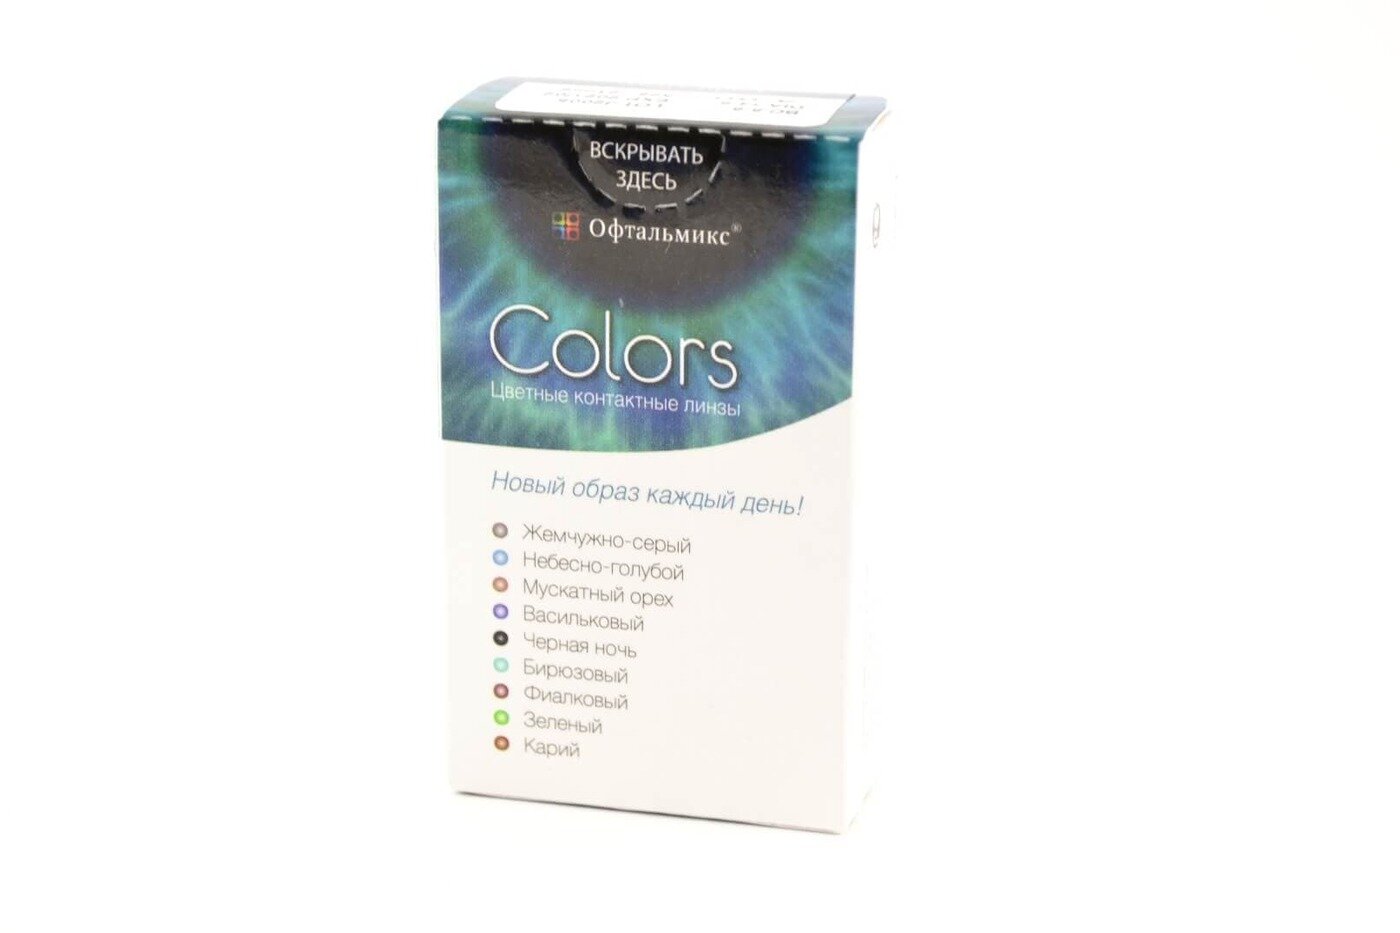 Офтальмикс Colors New (2 линзы)-8.50 R.8.6 Sky(Небесно-голубой)